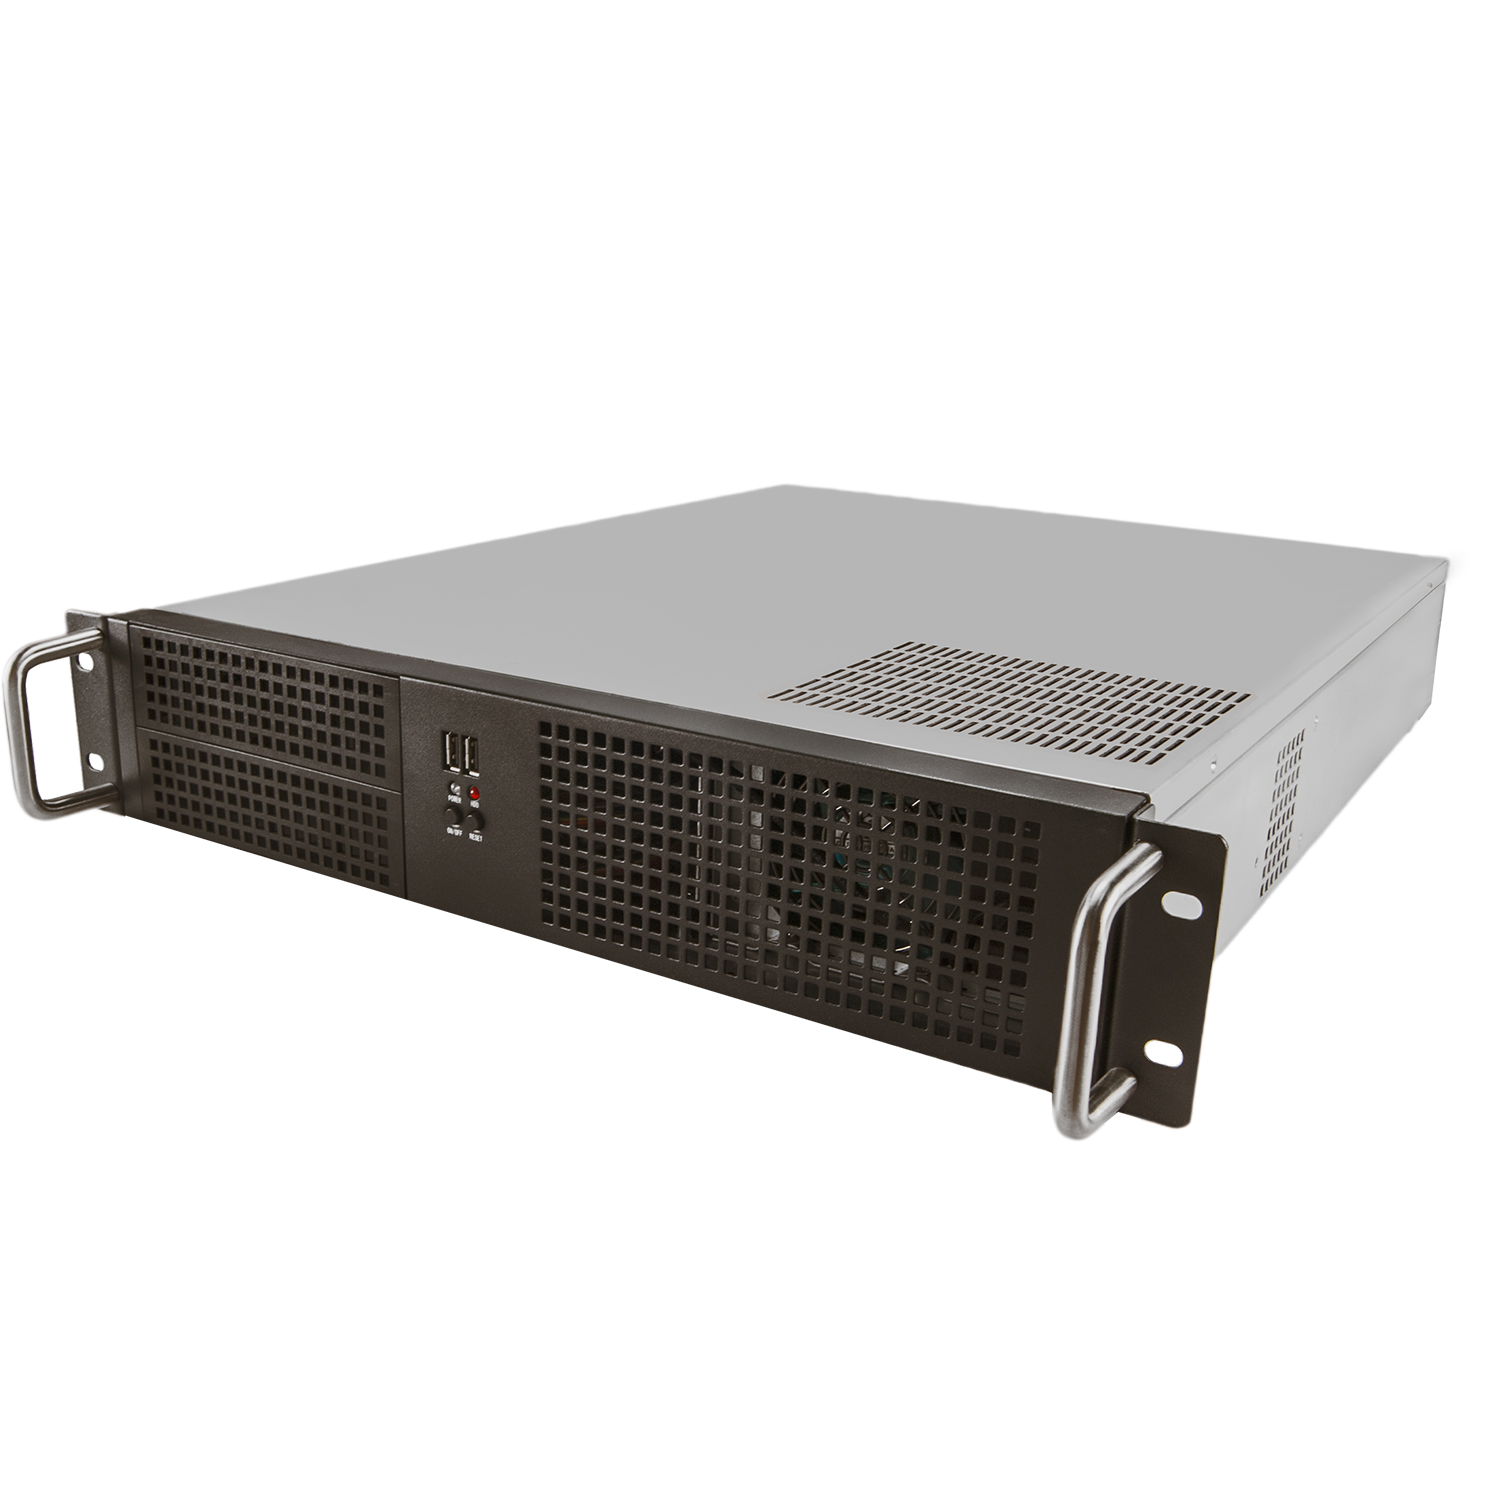 Серверный корпус 2U NR-N2055 600Вт (ATX, 12"x10.5", 2x5.25ext, 6x3.5int, 550mm) чёрный, NegoRack